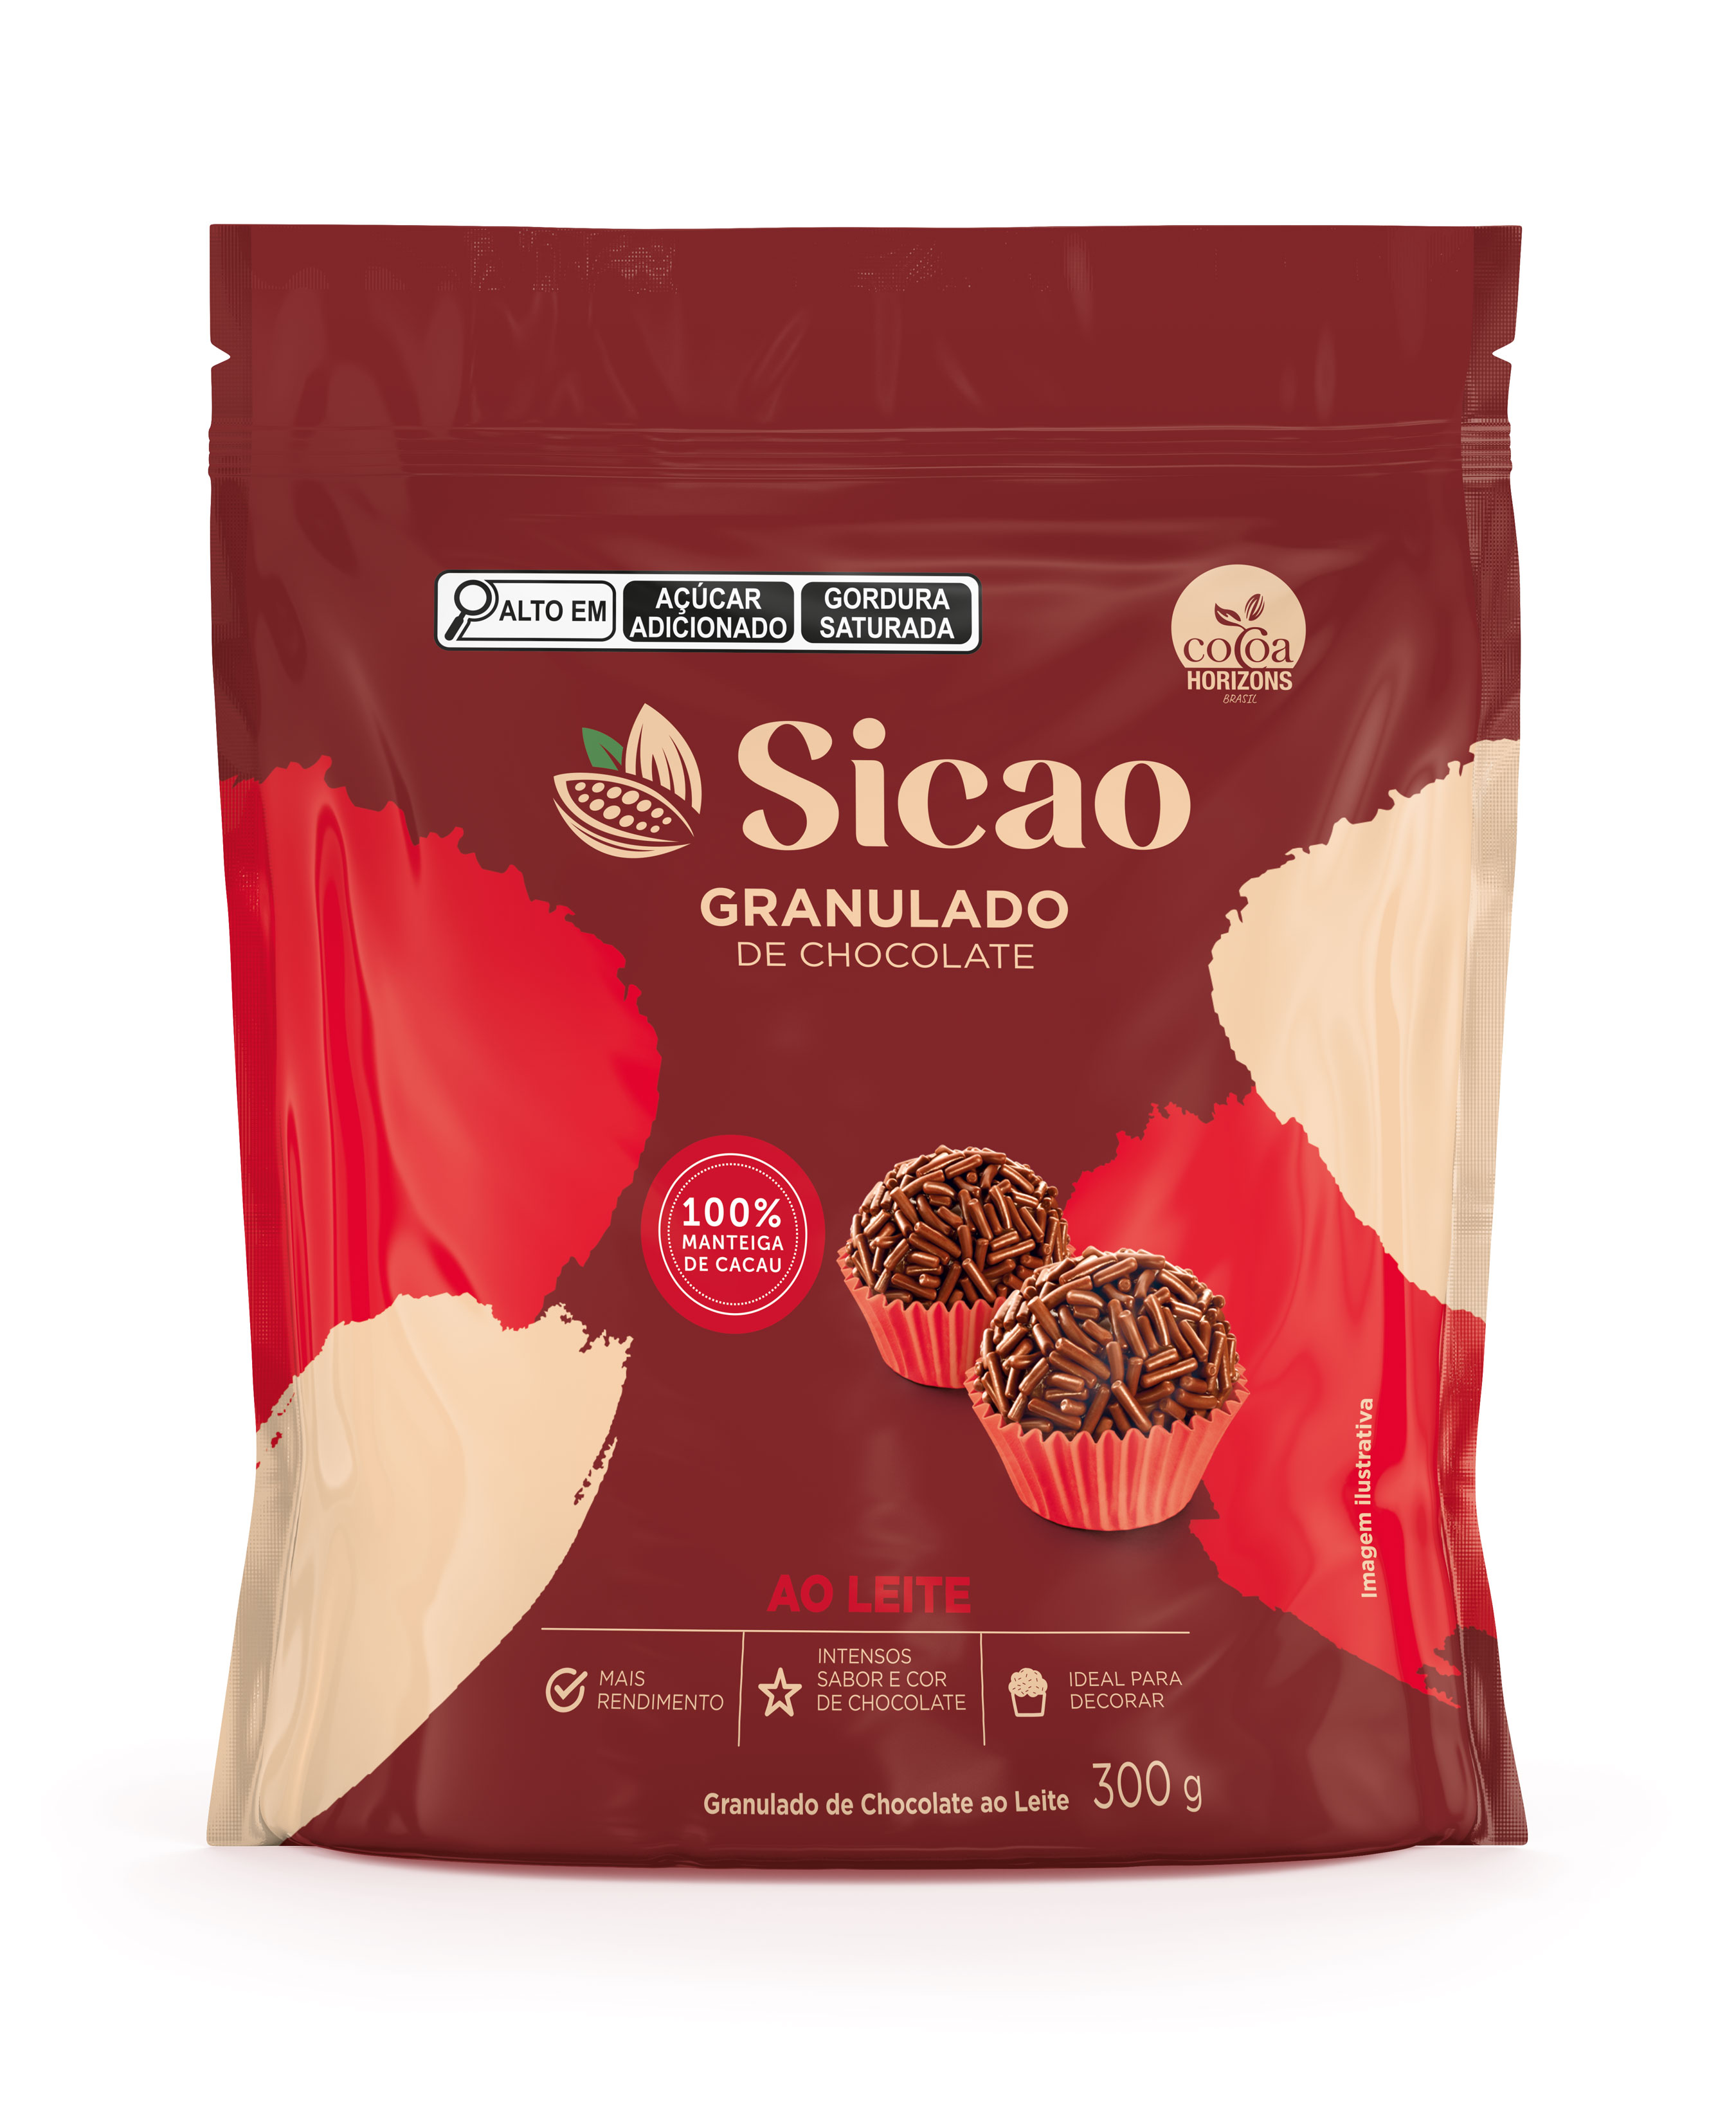 Granulado de Chocolate ao Leite Sicao - 300g (100% manteiga de cacau) (1)